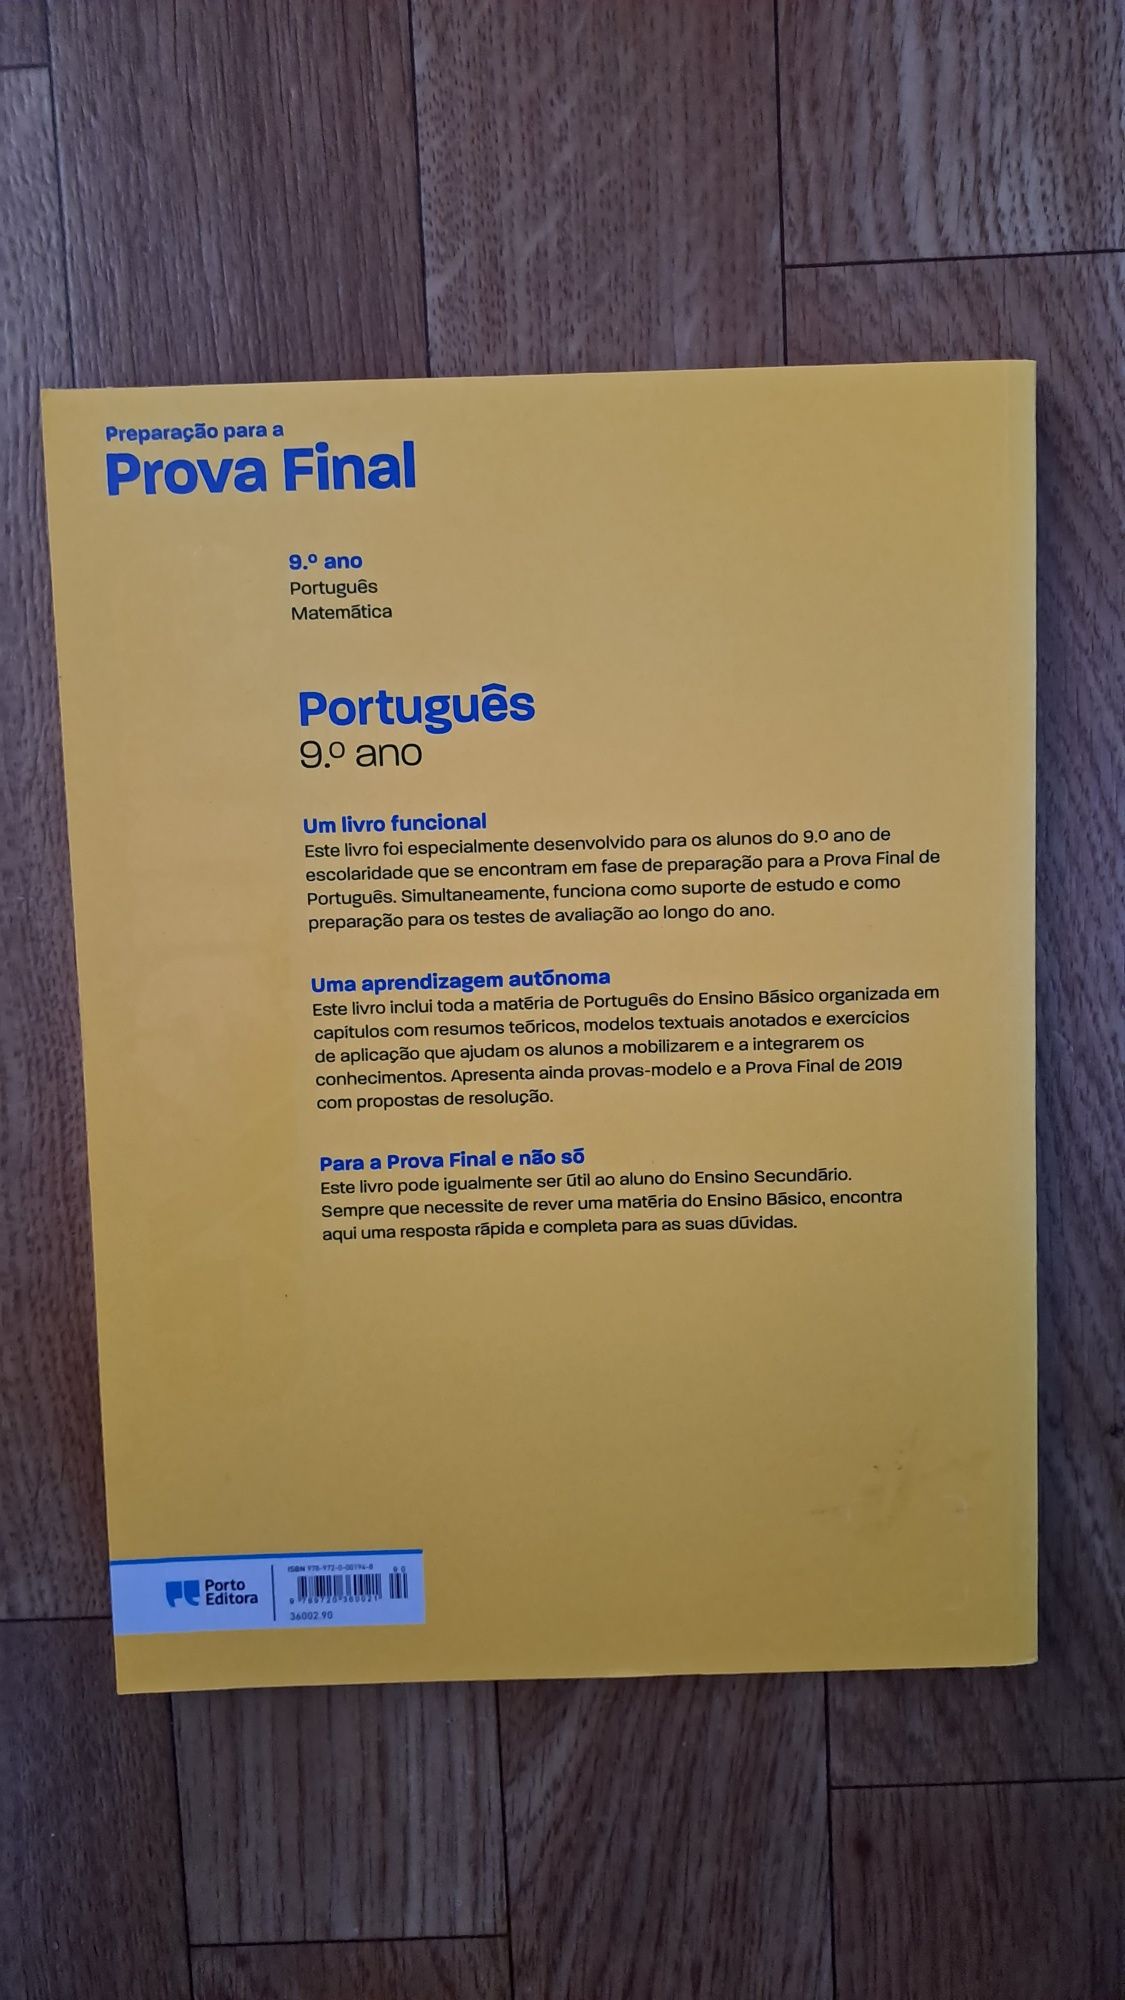 Livro "Preparação para a Prova Final" Português 9° ano